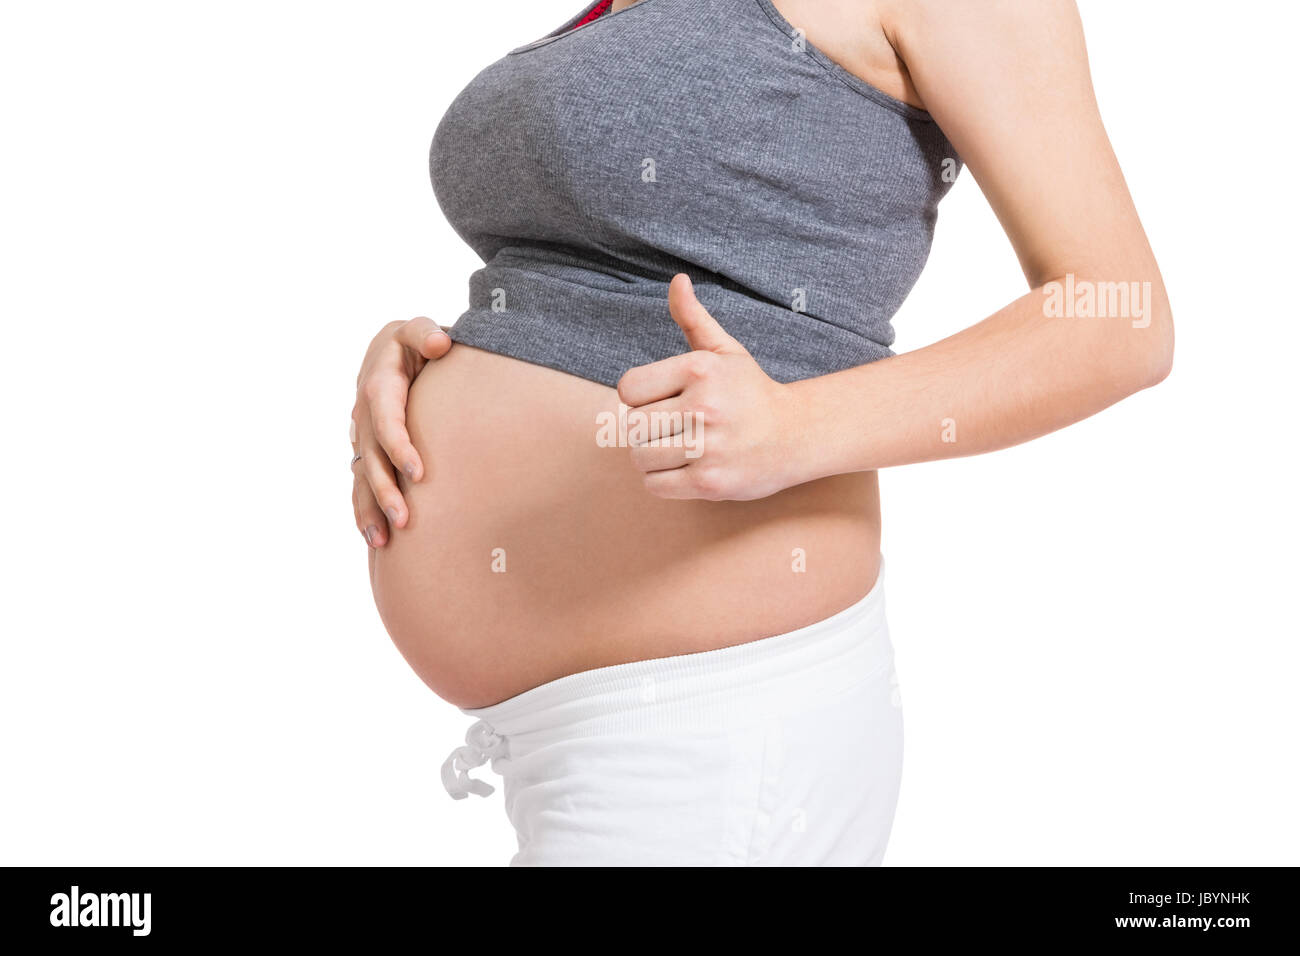 Junge frau mit Babybauch in erwartungsvoller Haltung als Nahaufnahme isoliert vor weißem Hintergrund Stock Photo